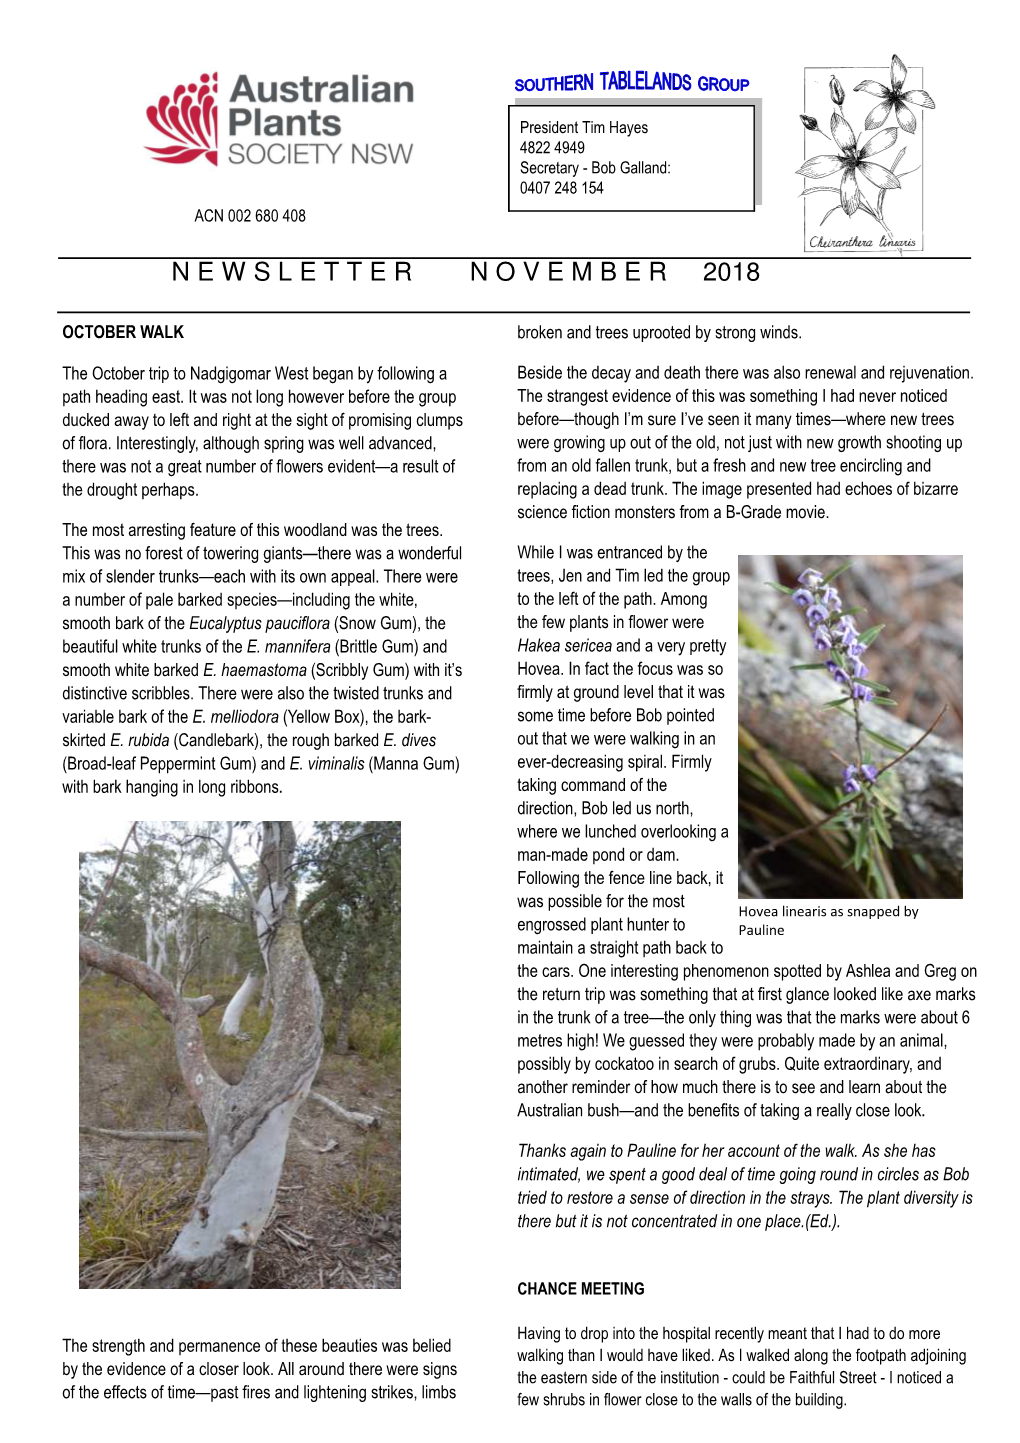 Newsletter November